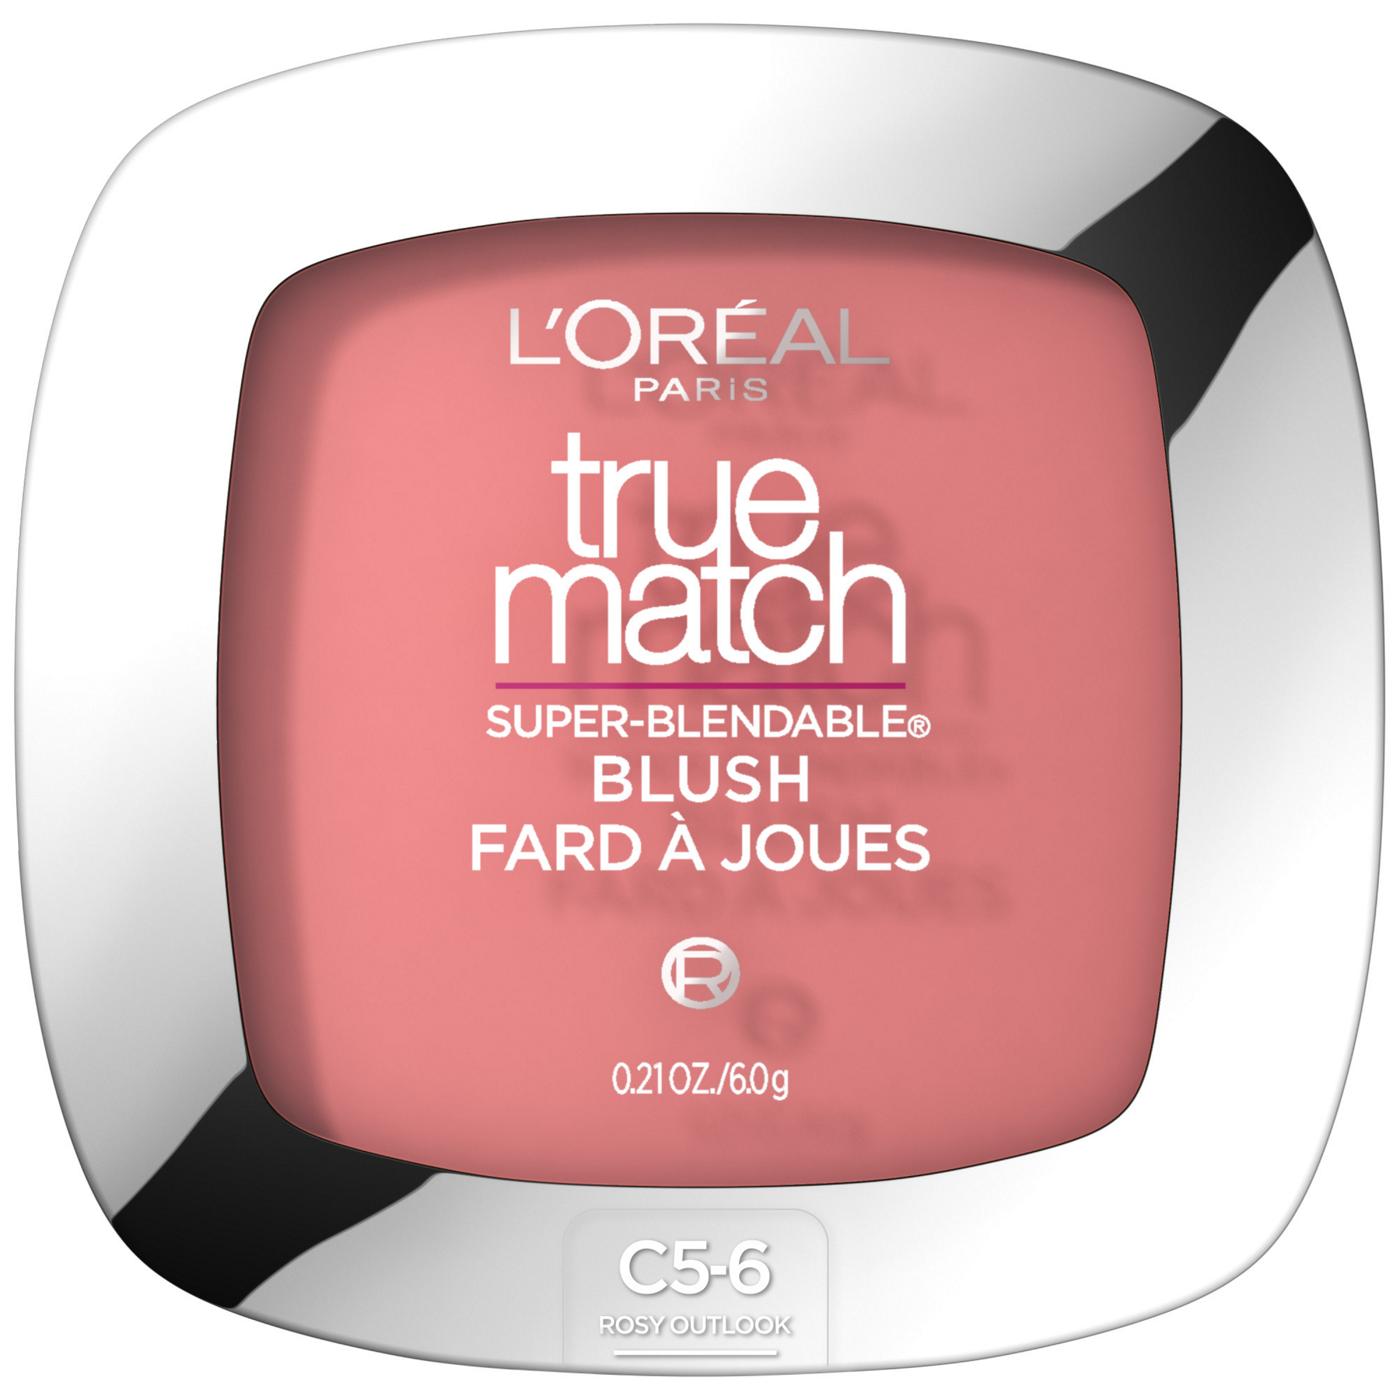 L'Oréal Paris True Match Super-Blendable Blush, Soft Powder Texture Rosy Outlook; image 1 of 5